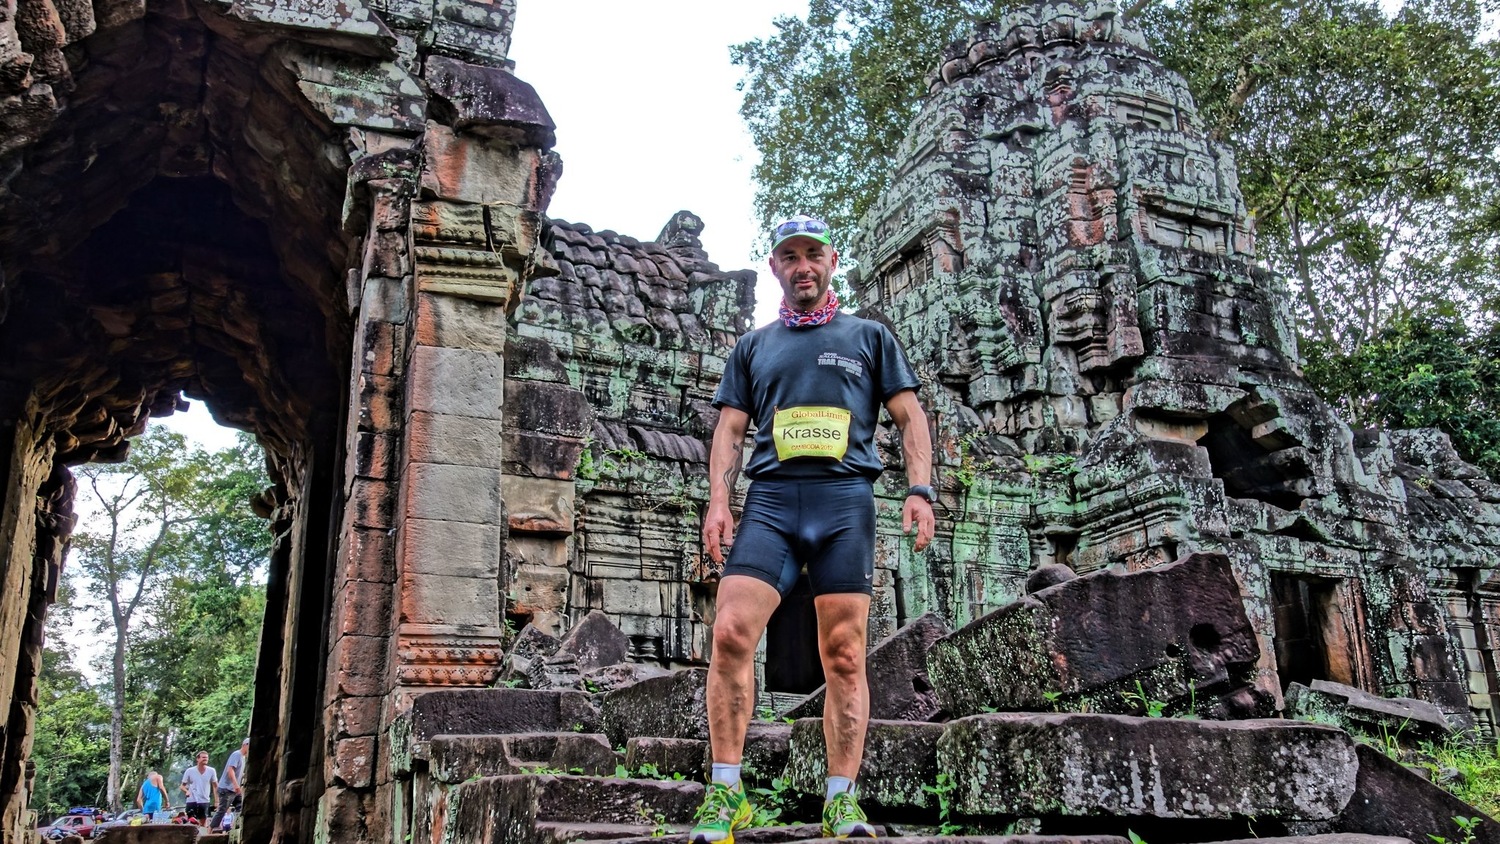 Краси Георгиев на маратон в Камбоджа